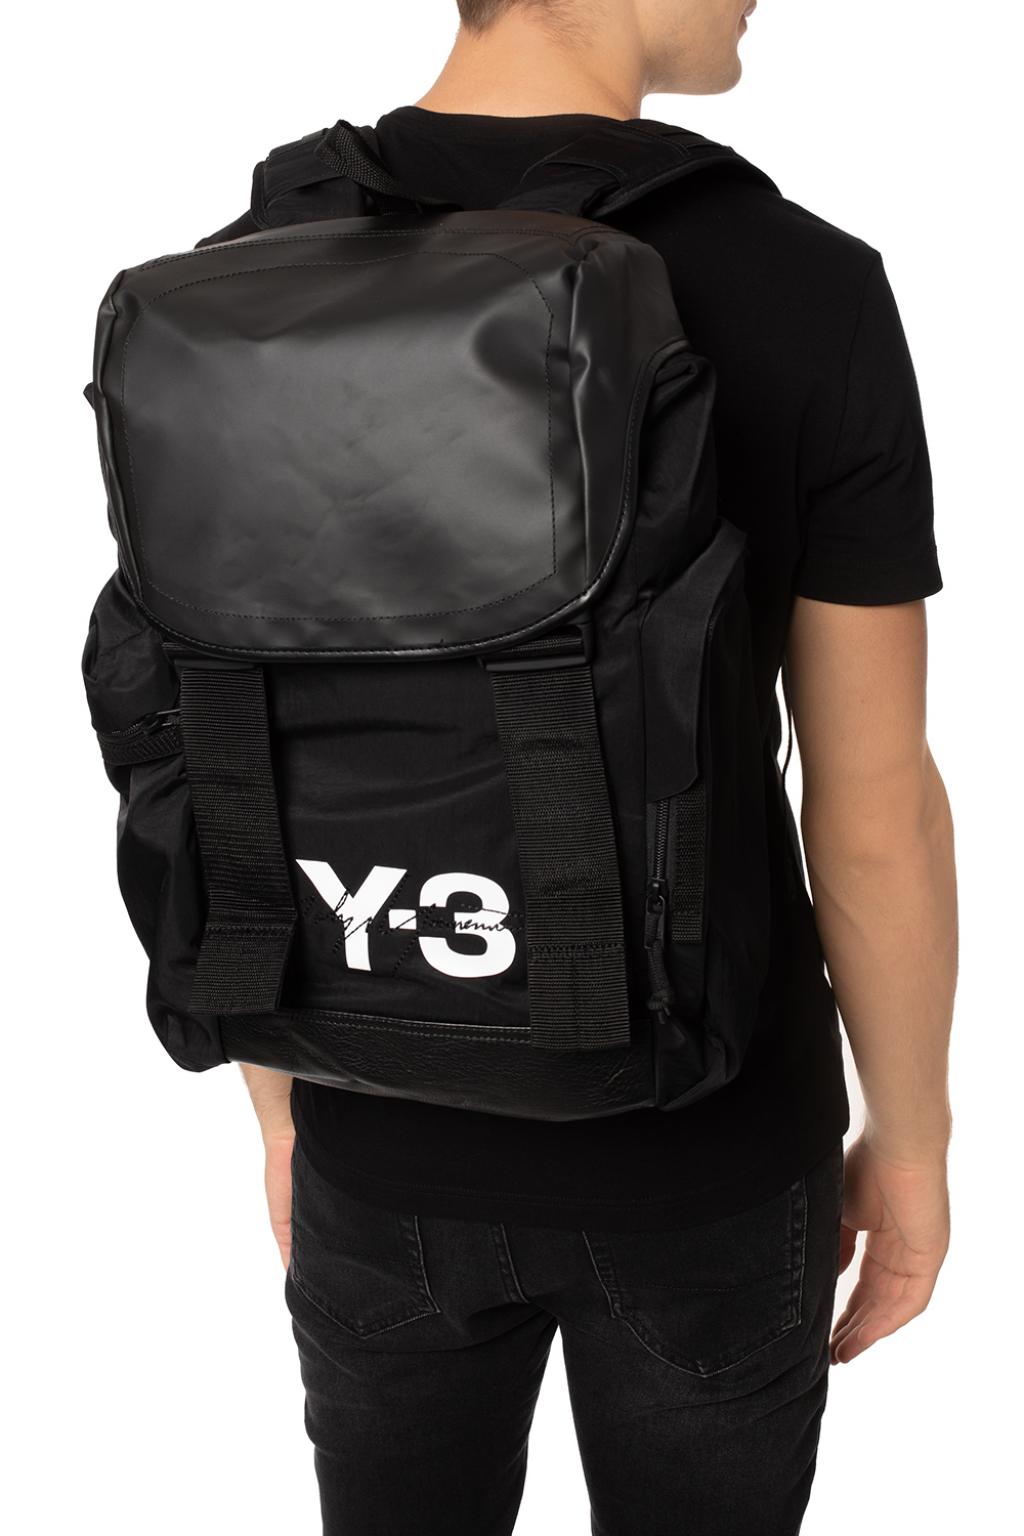 【国産格安】Y-3 Mobility バックパック バッグ